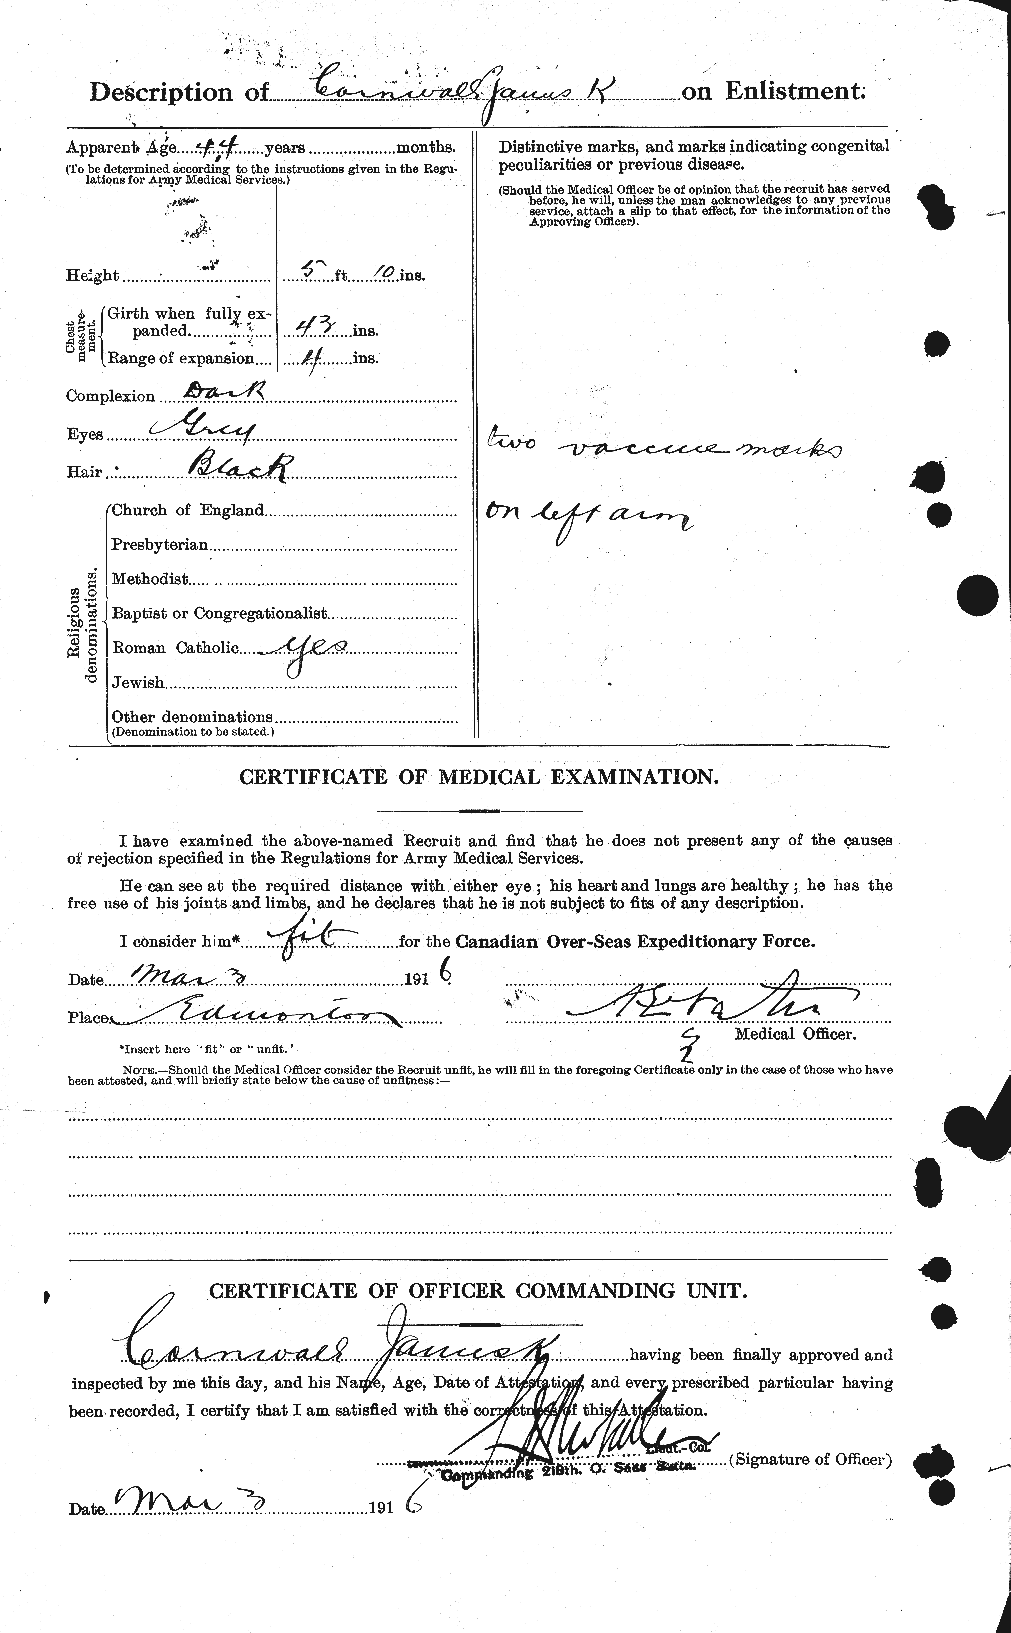 Dossiers du Personnel de la Première Guerre mondiale - CEC 055391b